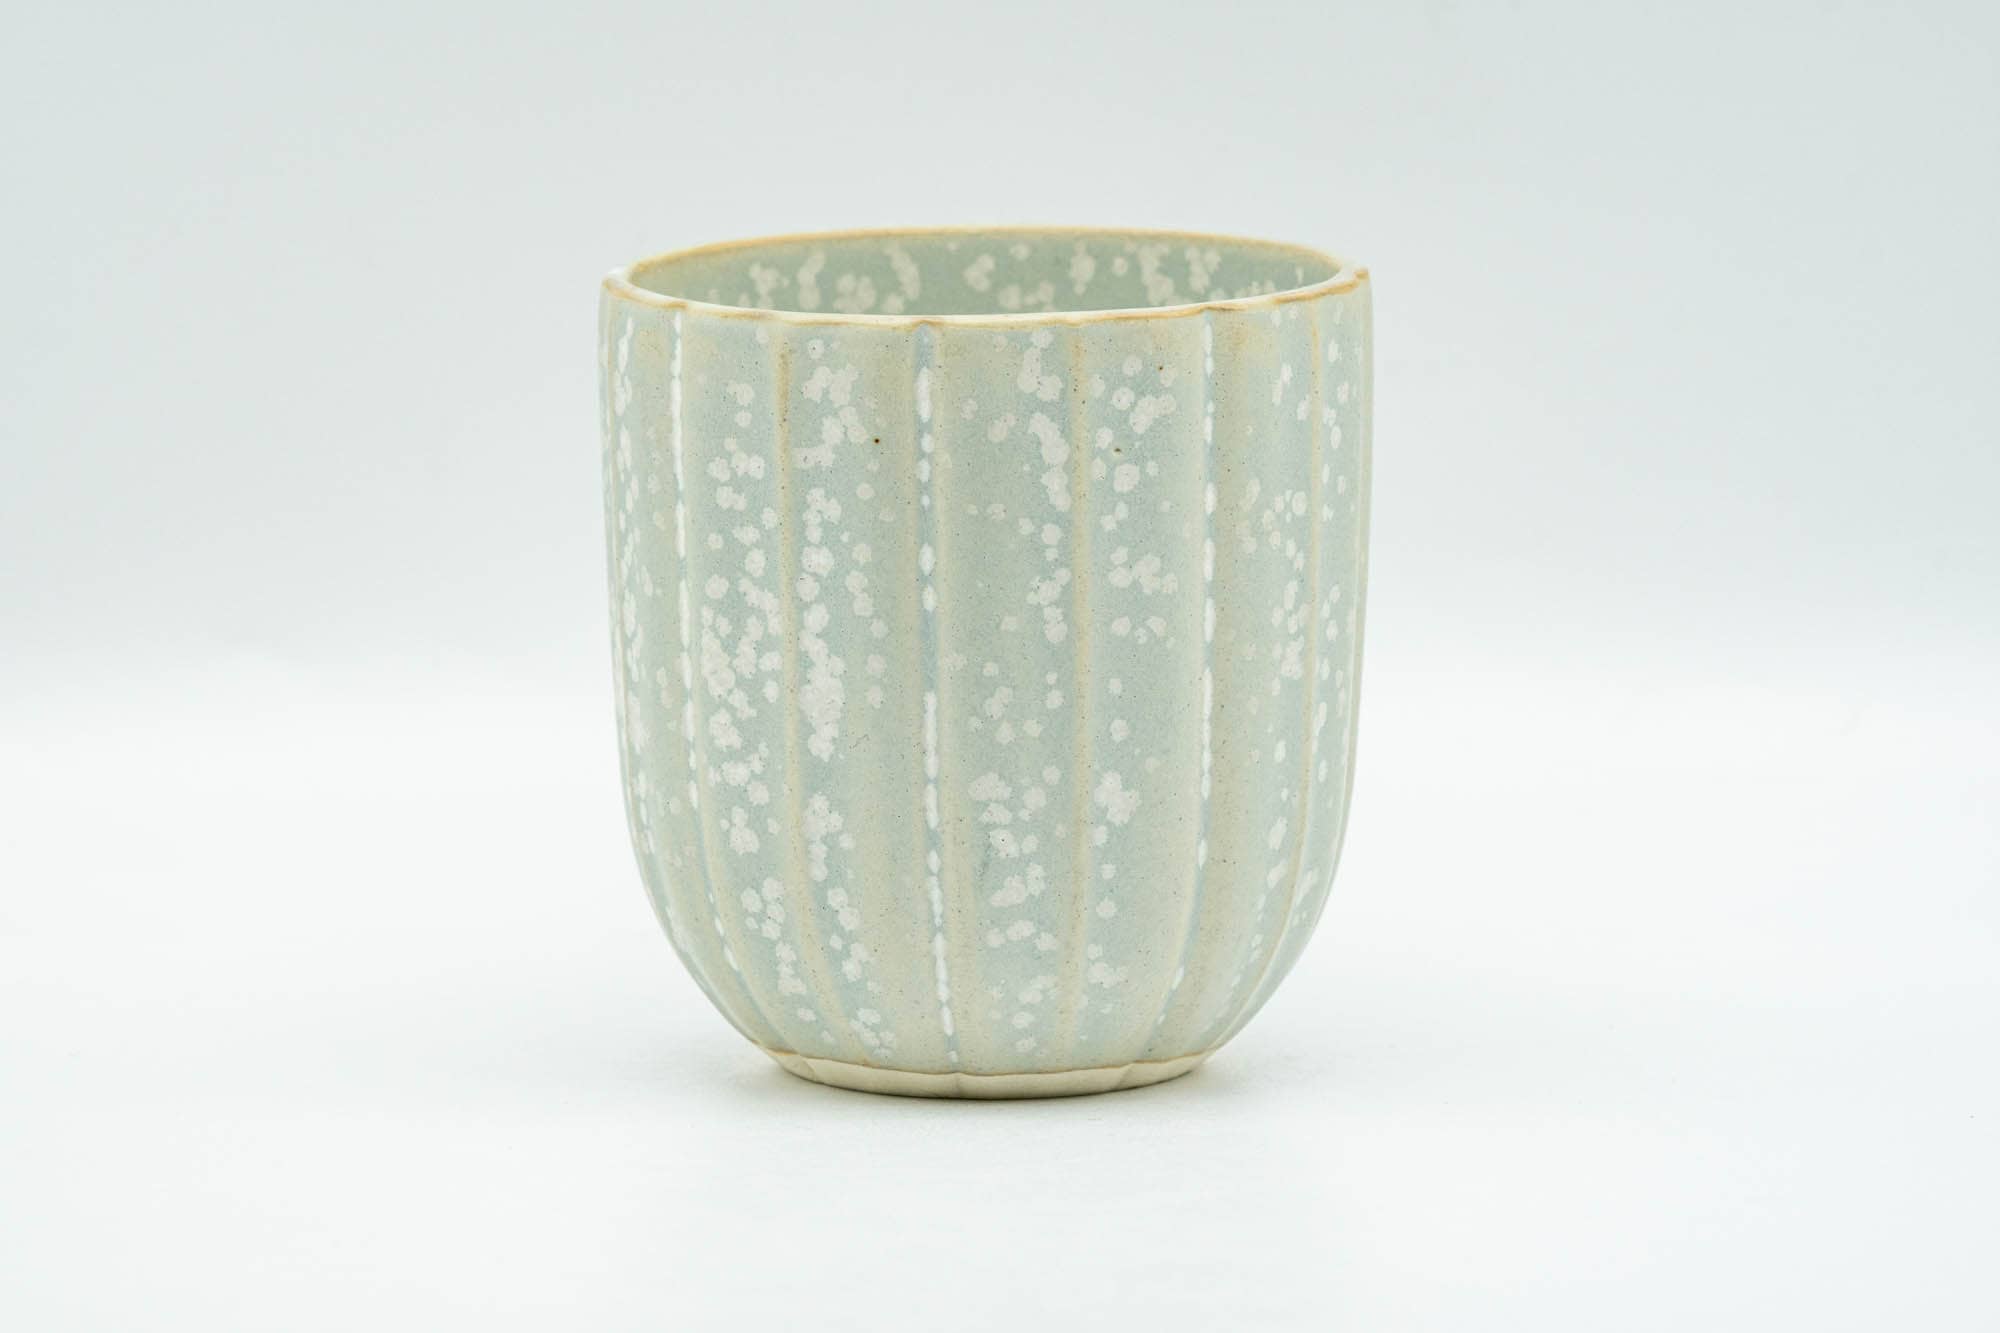 Japanese Teacup - Floral Speckled Grey Glazed Kiyomizu-yaki Yunomi - 120ml